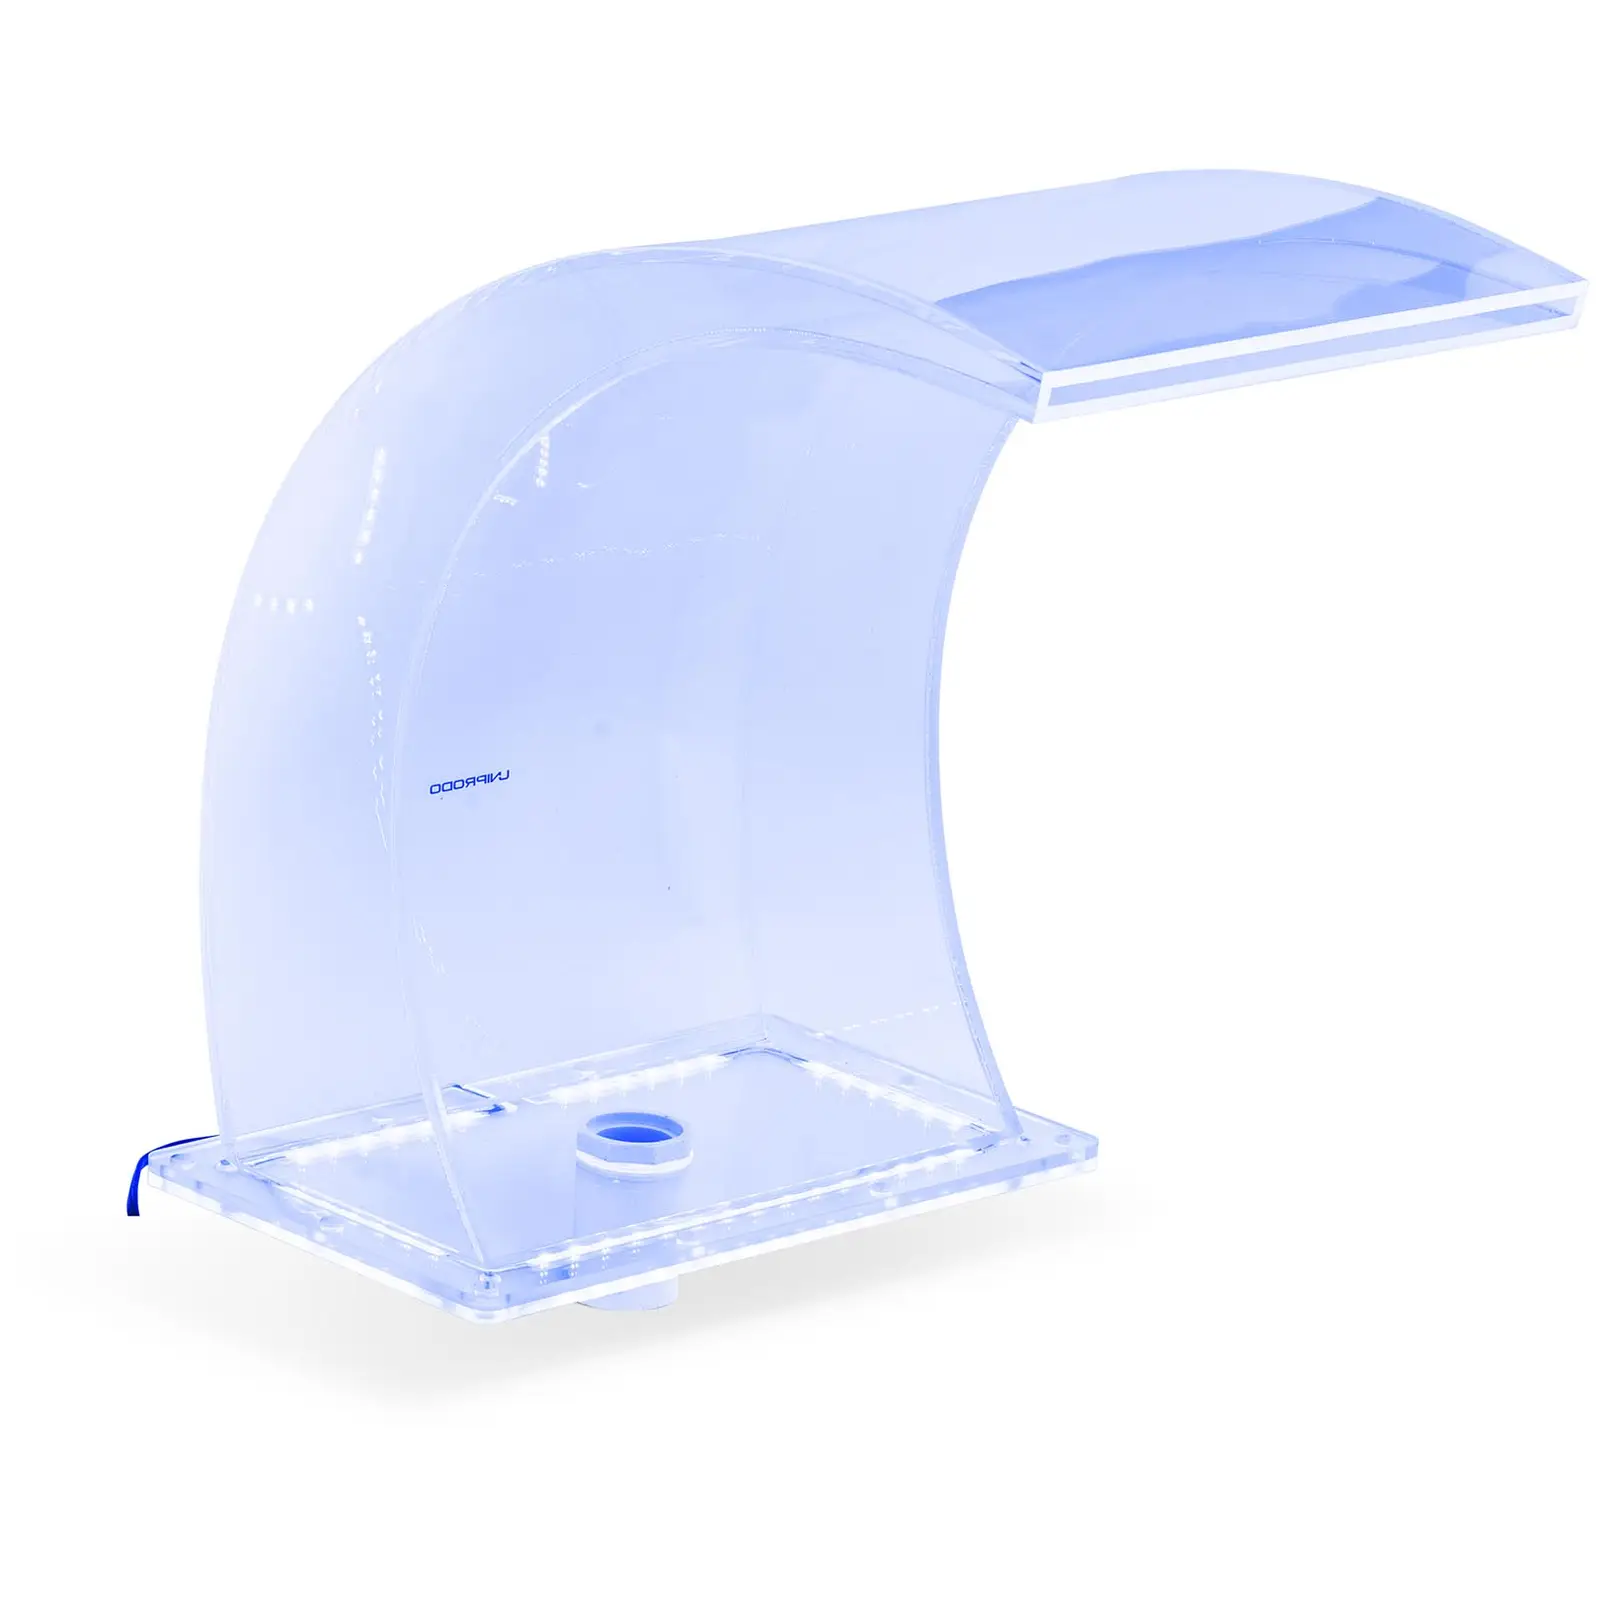 Chrlič vody 33 cm LED osvětlení modrá/bílá barva - Chrliče vody Uniprodo